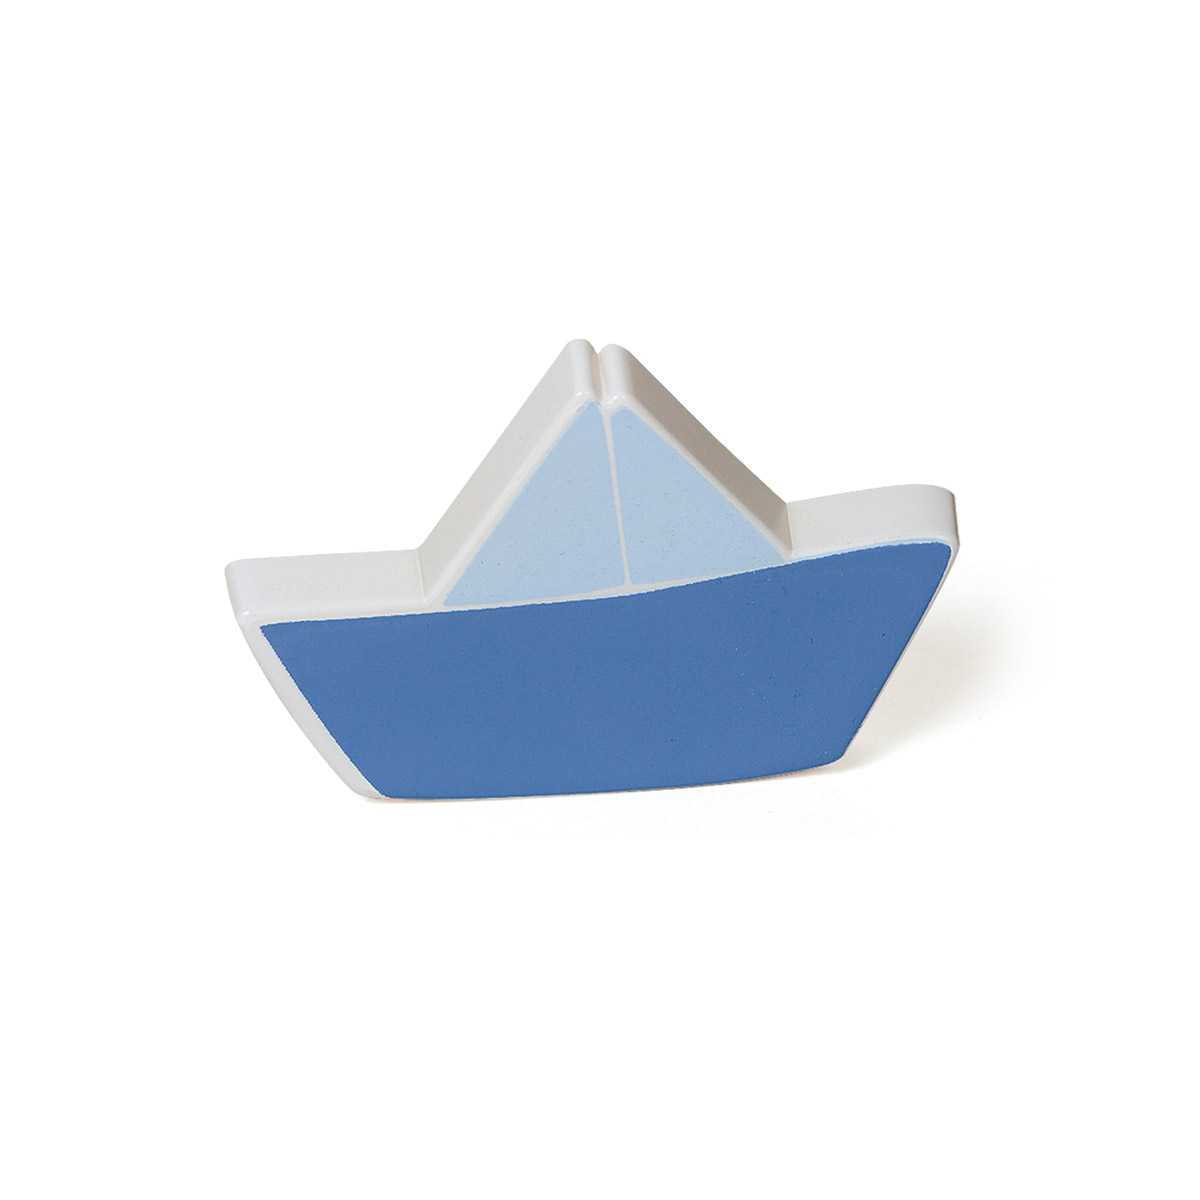 Bouton en plastique avec finition pour bateau, dimensions: 81x55x25mm